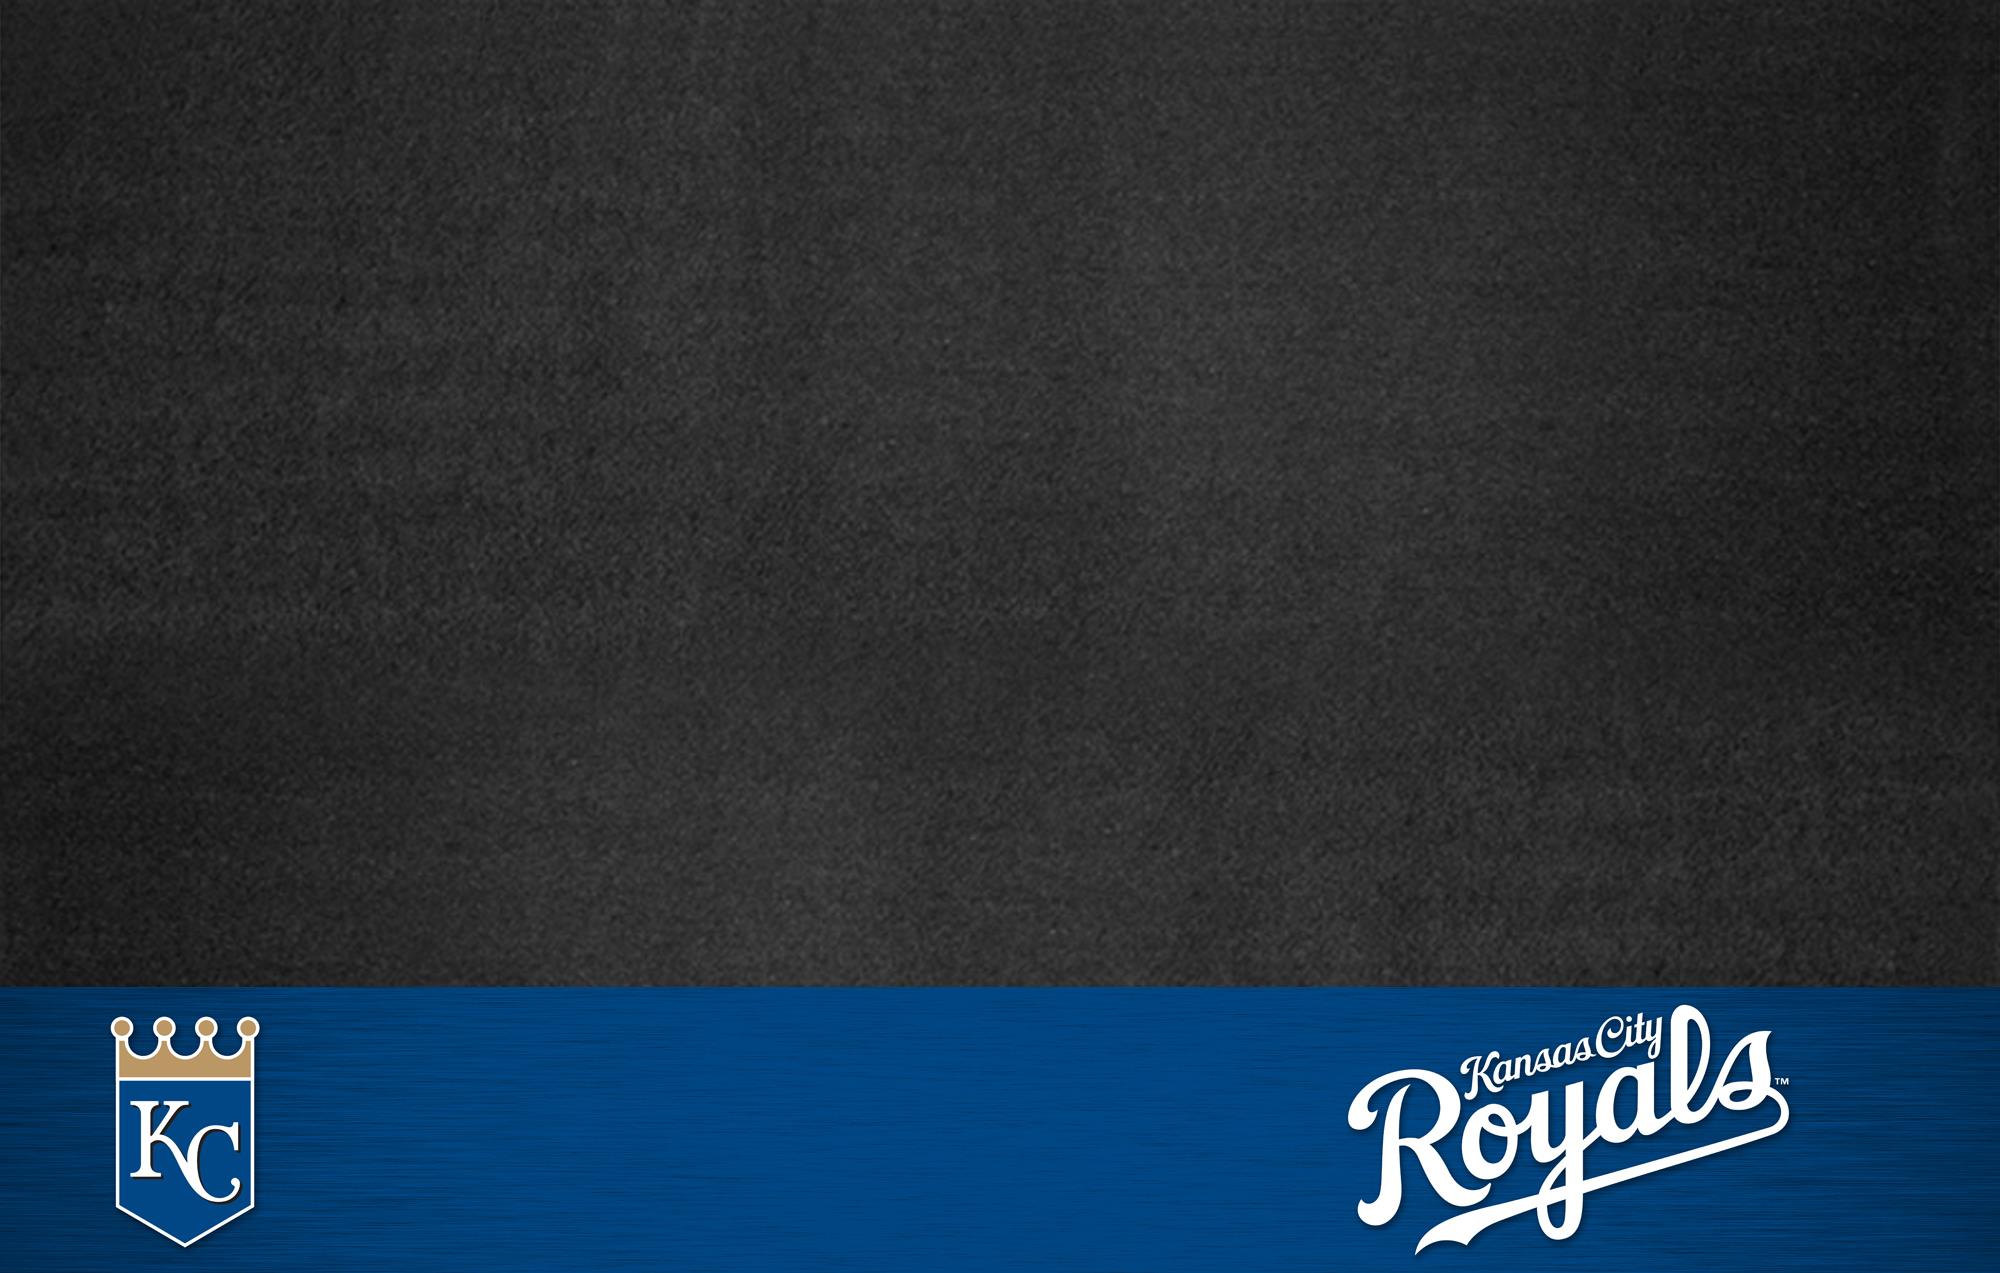 KANSAS CITY ROYALS mlb baseball 38 wallpaper background by